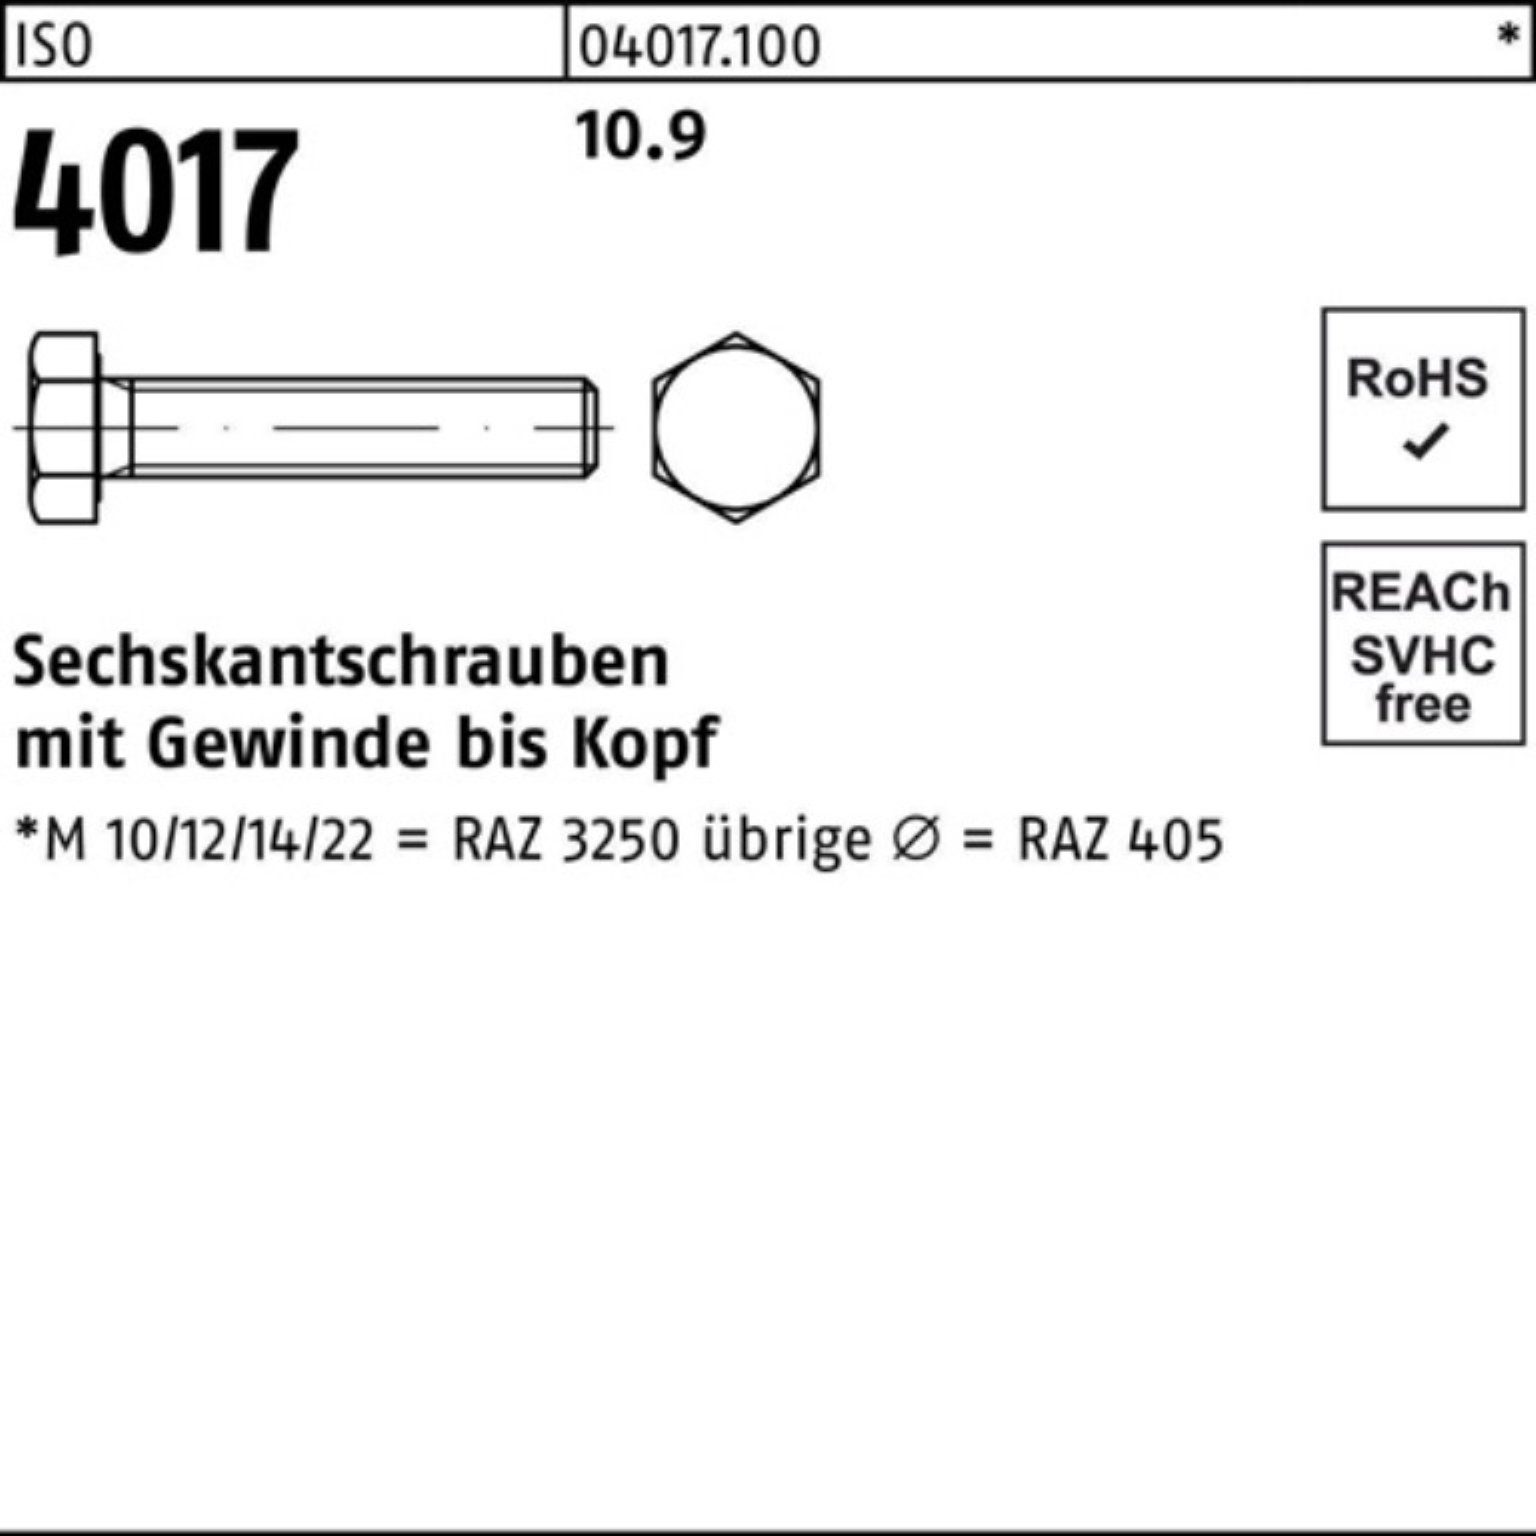 180 10.9 Bufab 4017 40 Sechskantschraube 1 100er Sechskantschraube VG Stück Pack ISO ISO M27x